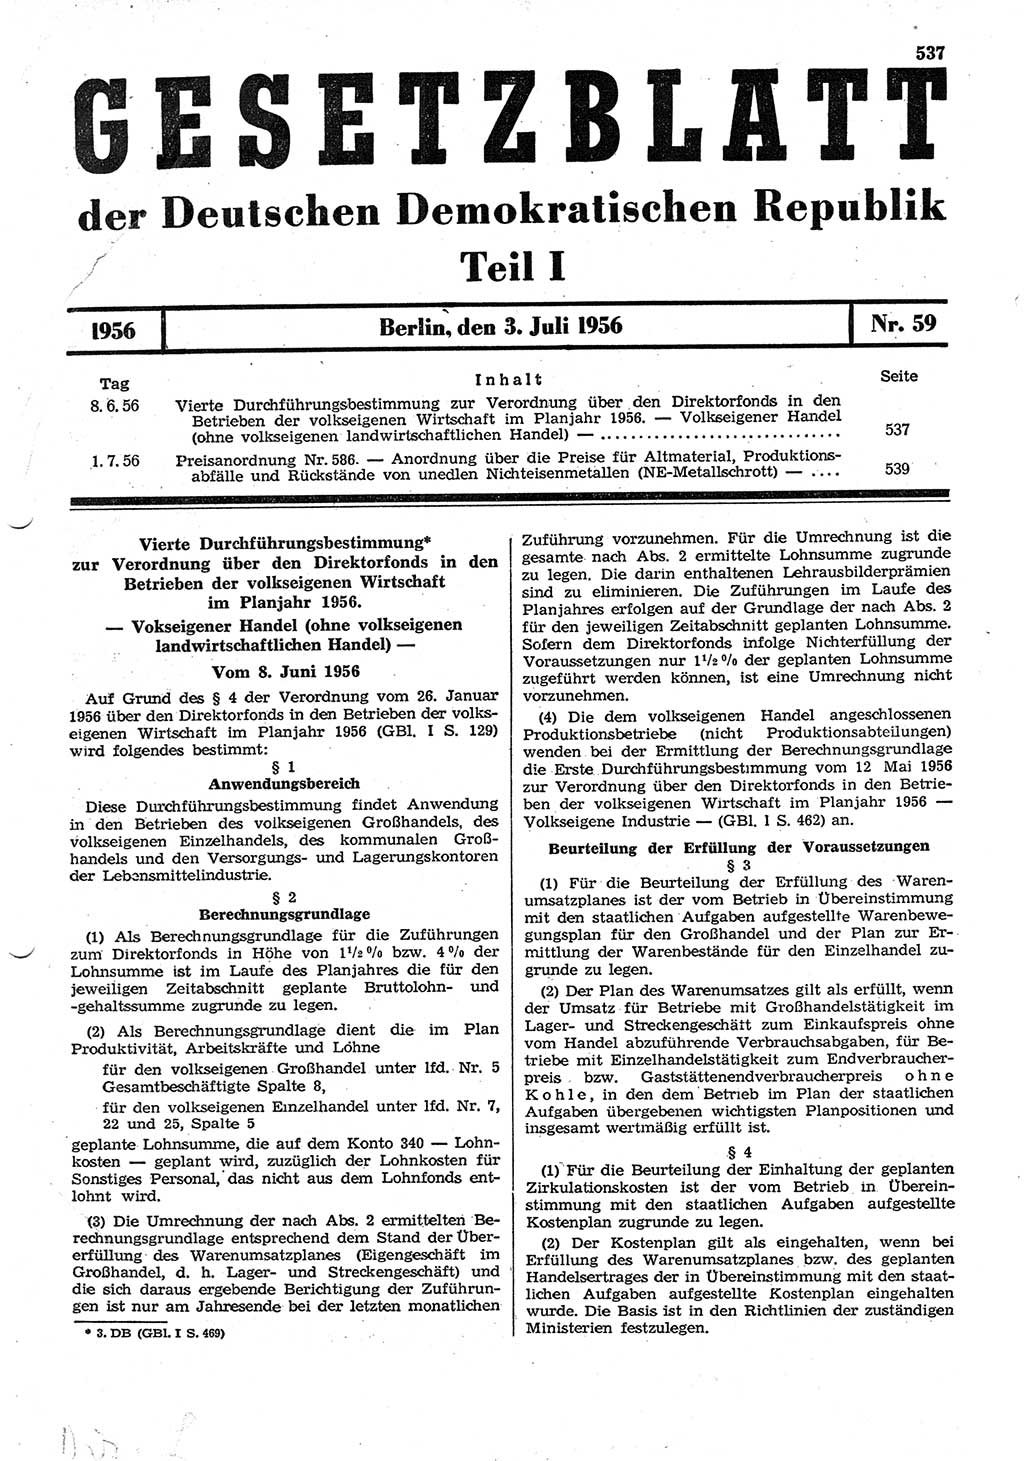 Gesetzblatt (GBl.) der Deutschen Demokratischen Republik (DDR) Teil Ⅰ 1956, Seite 537 (GBl. DDR Ⅰ 1956, S. 537)